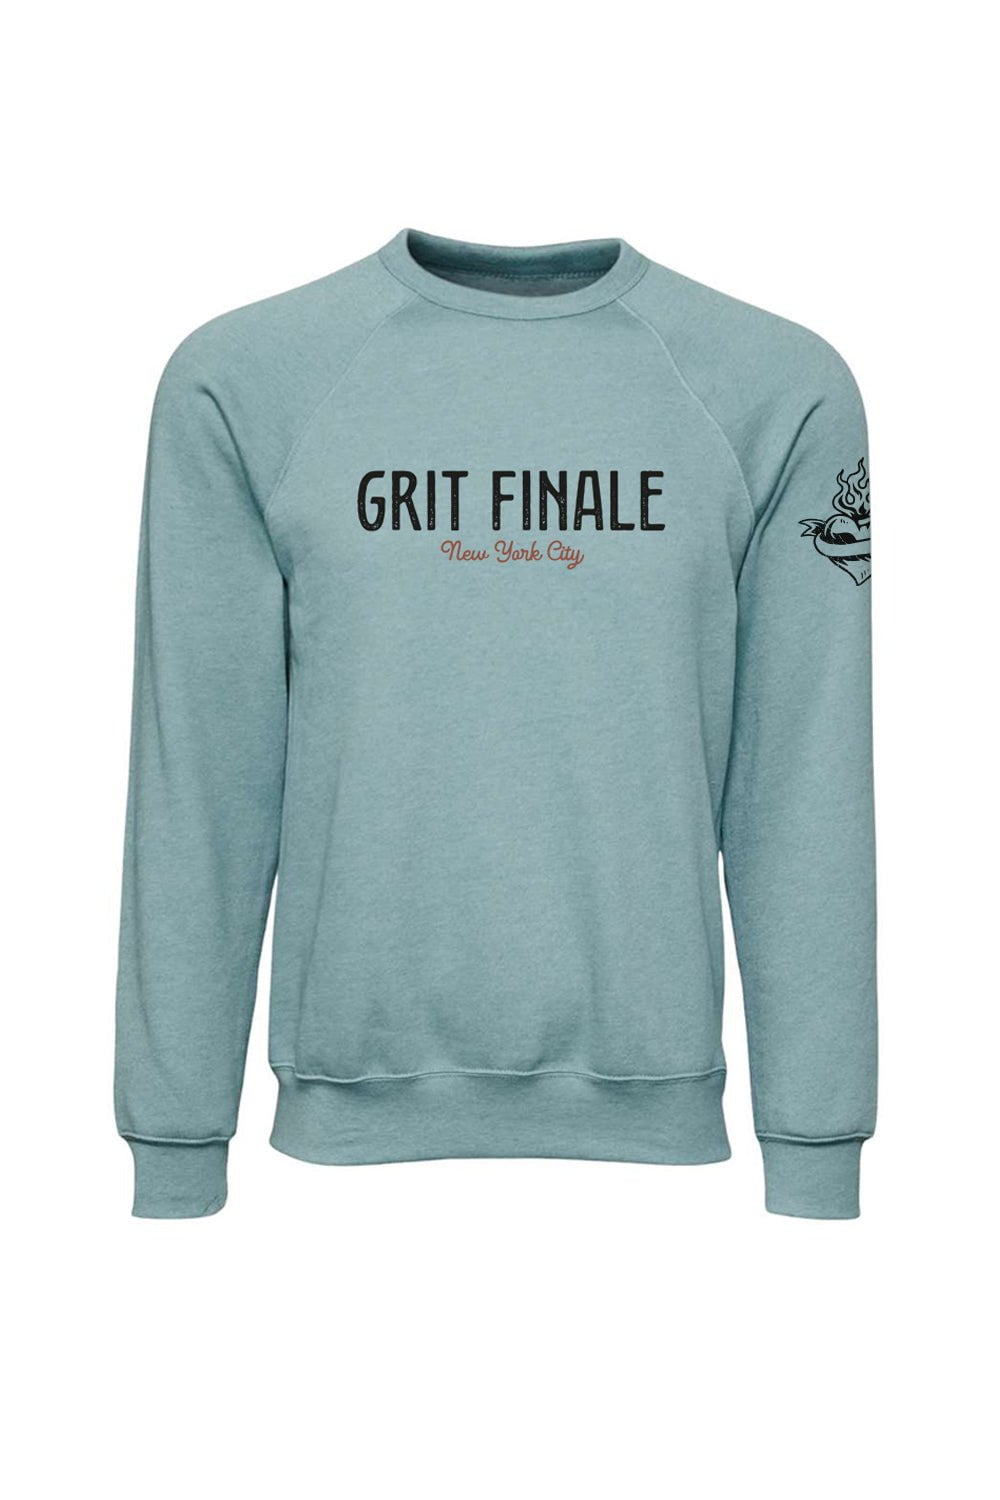 Sarah Marie Design Studio Sweatshirt Grit Finale Sweatshirt